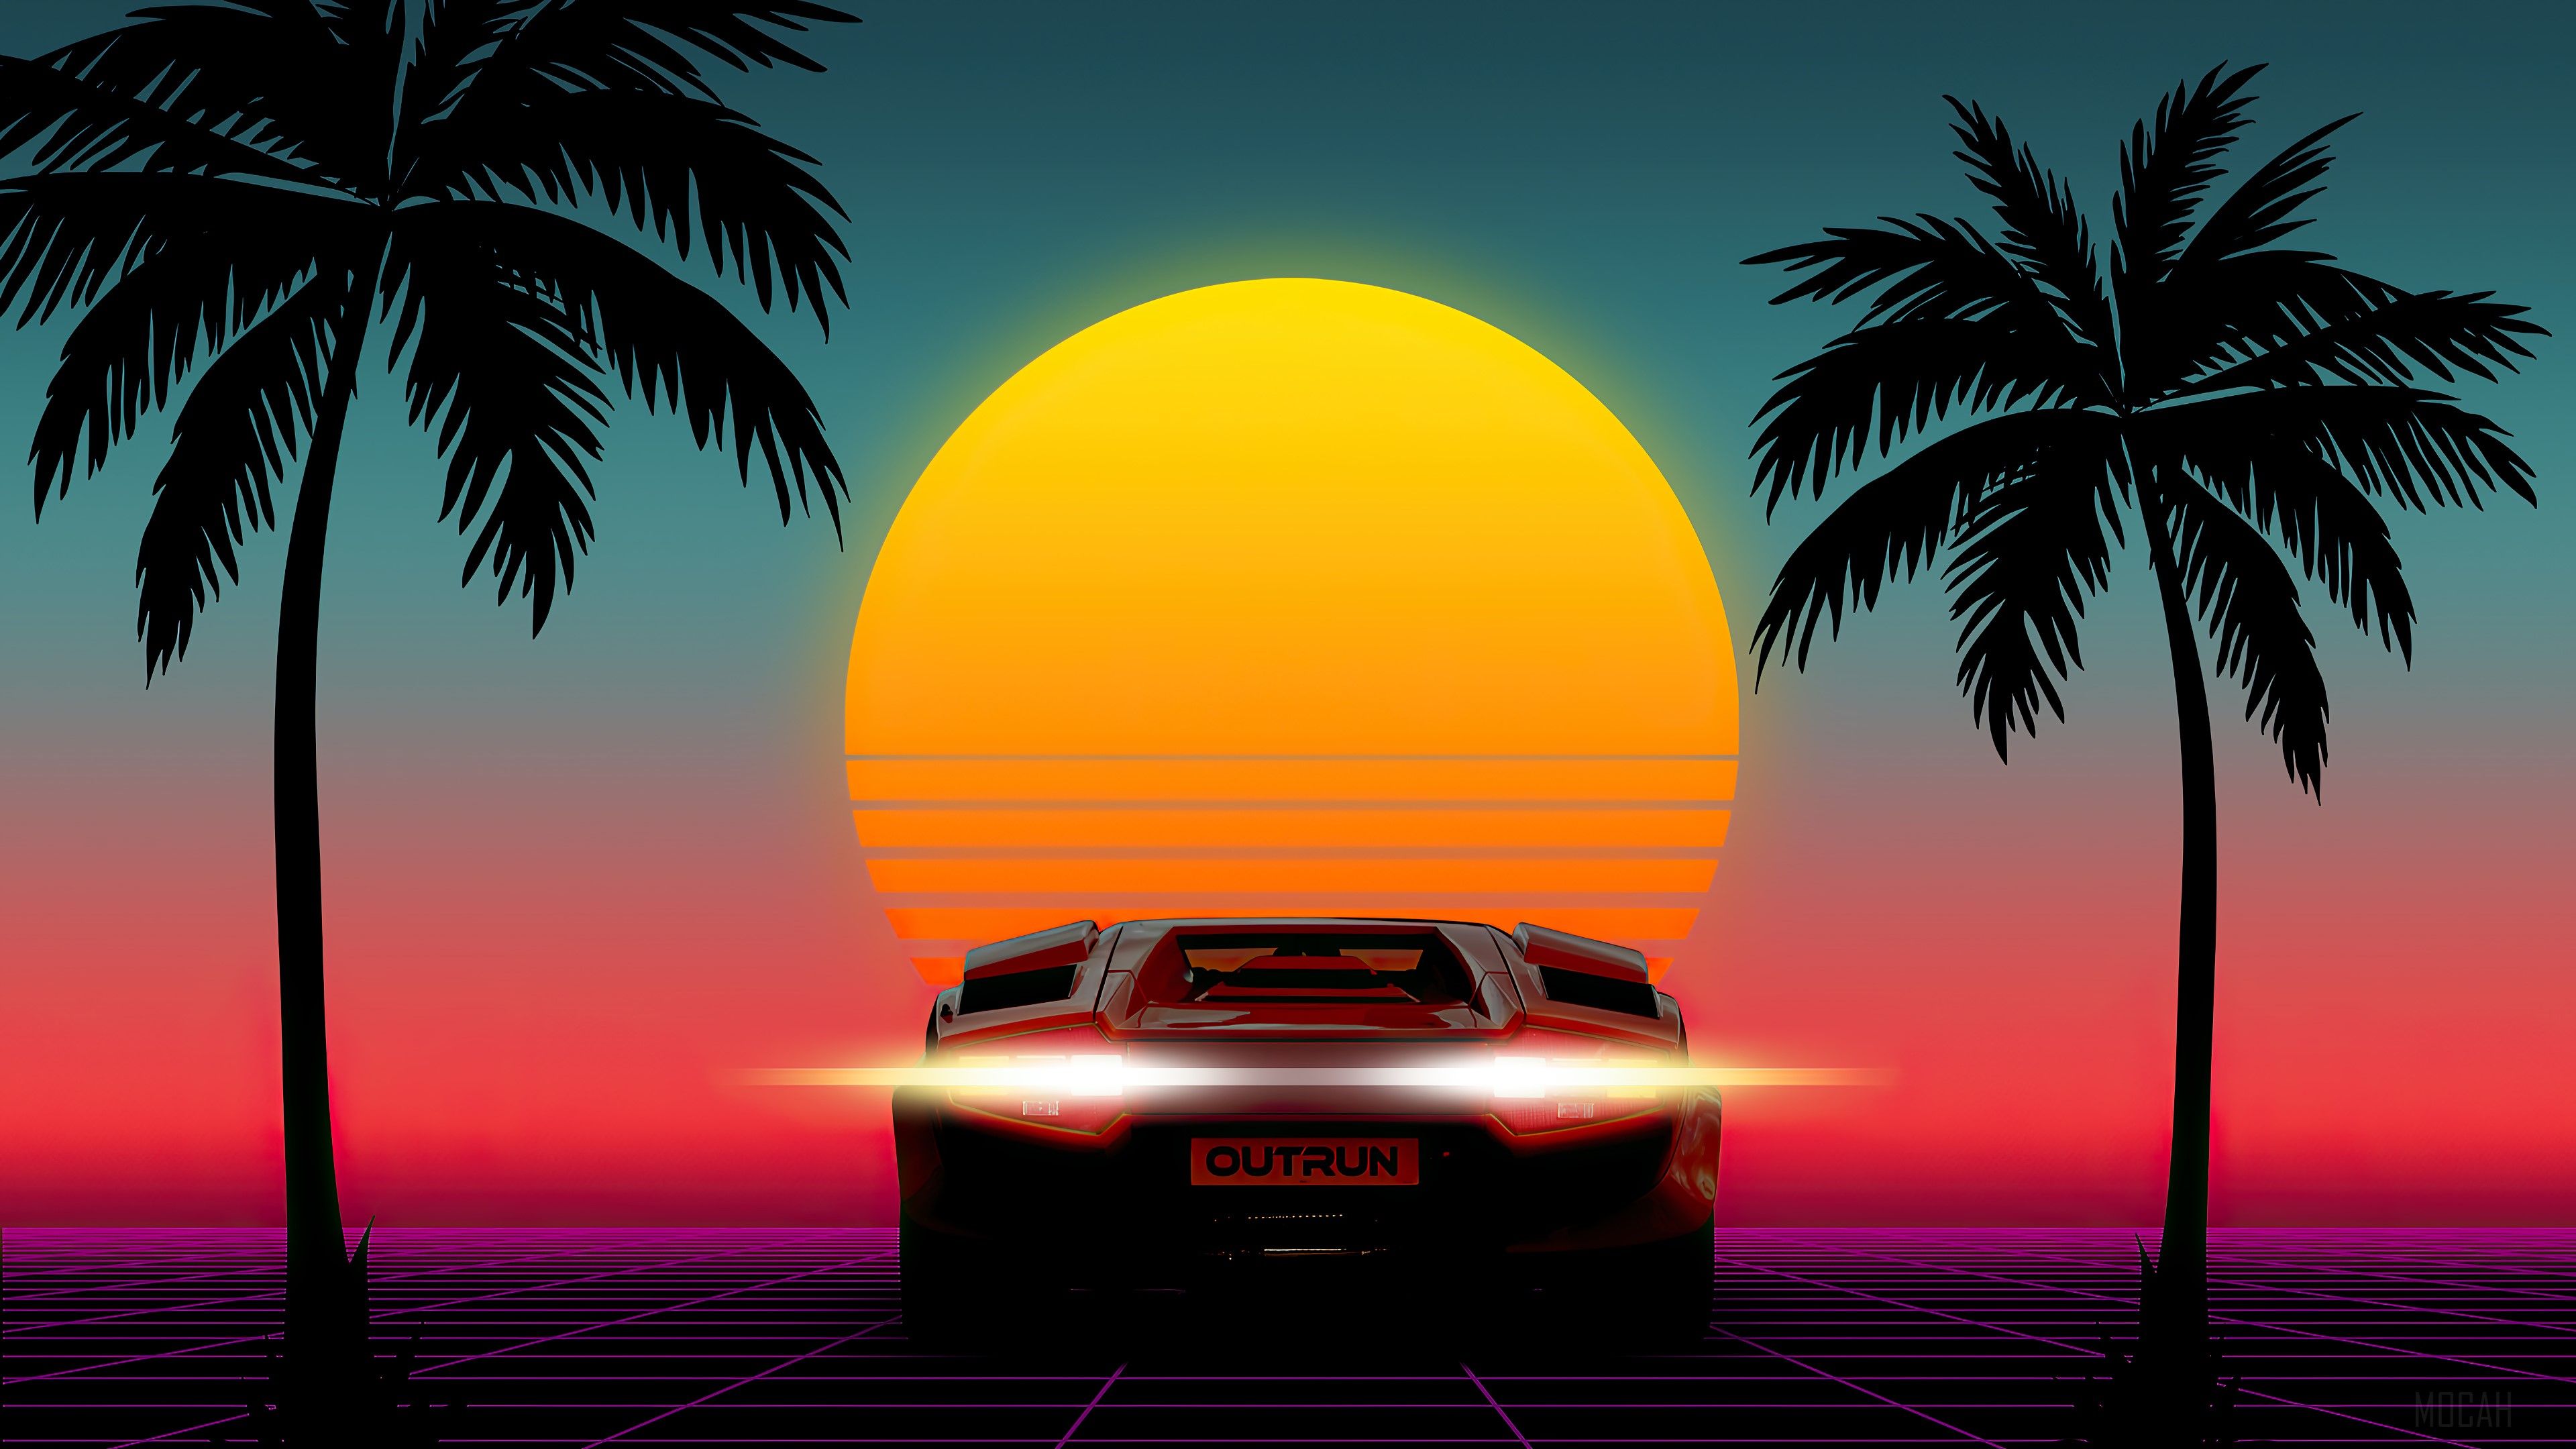 Sunset, Minimalist, Minimalism, Sports Car, Car, Palm, Scenery, Digital Art 4k wallpaper. Mocah HD Wallpaper